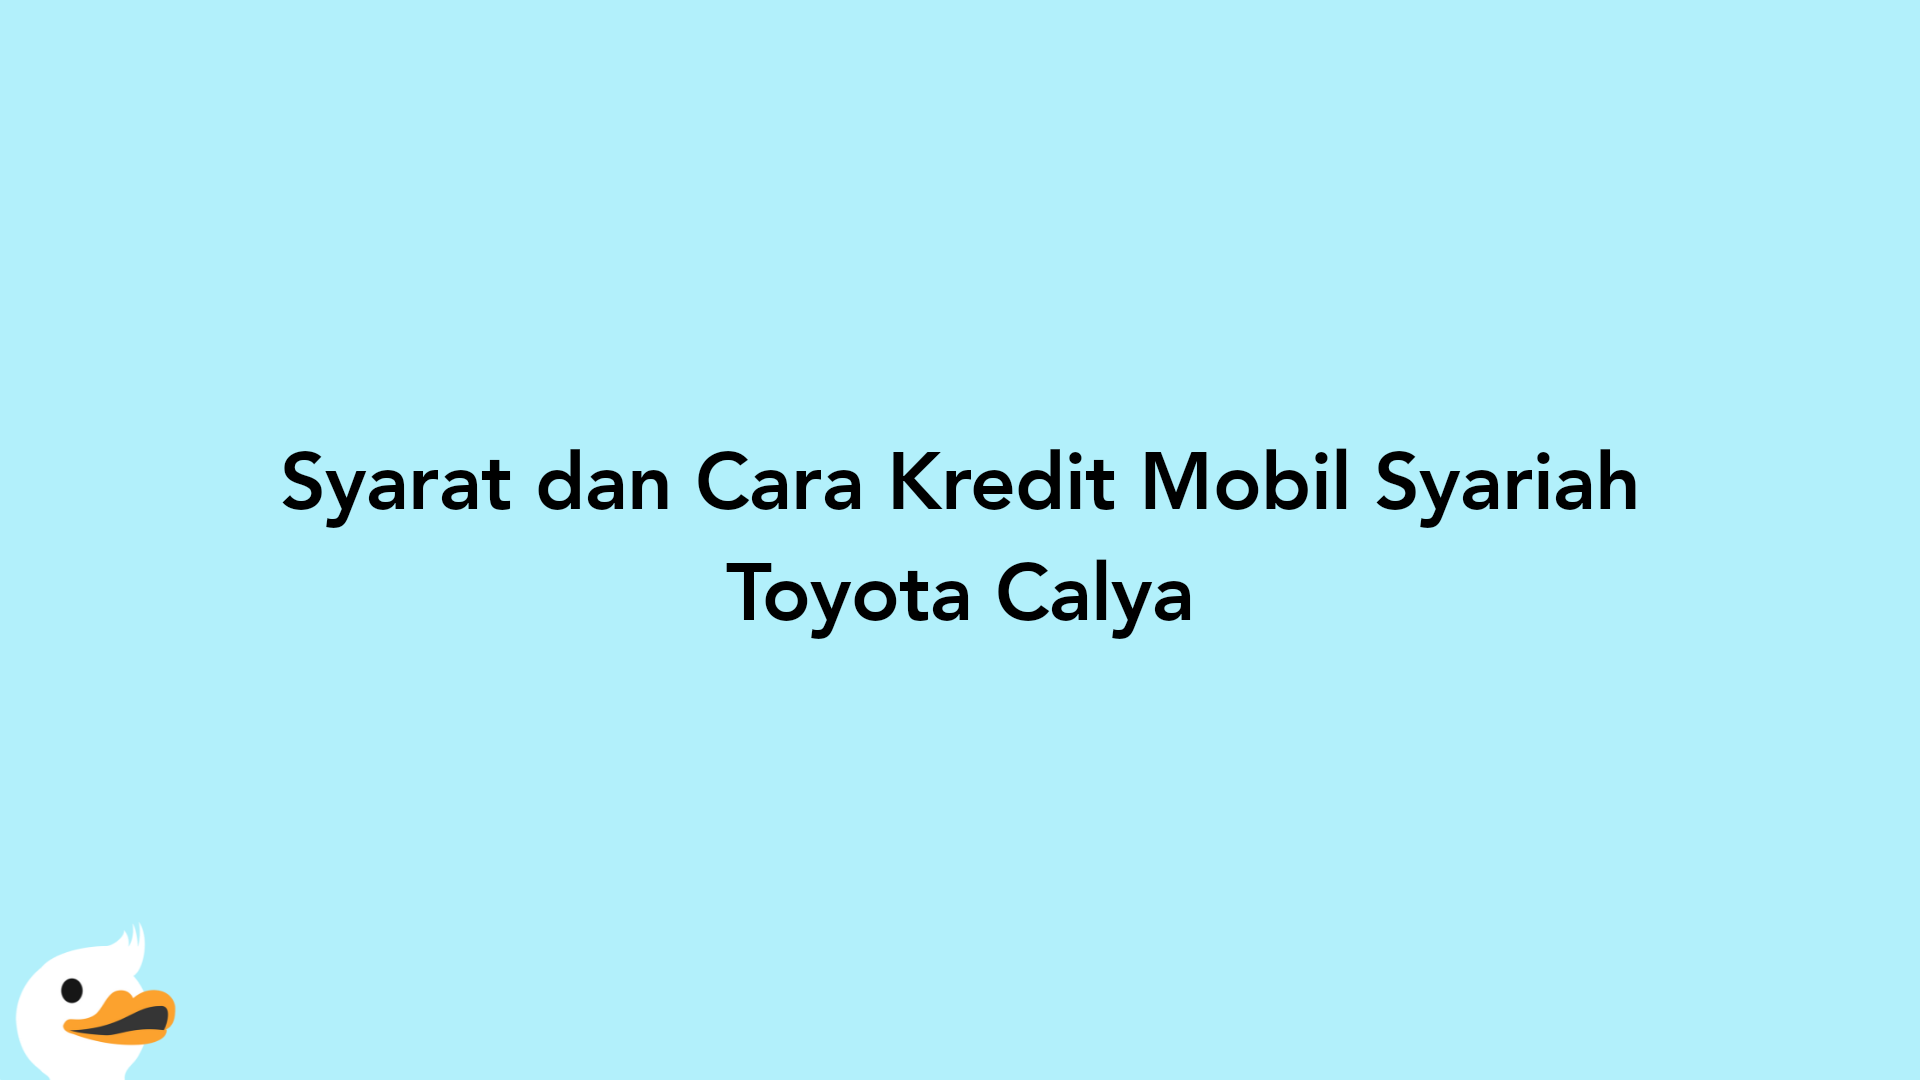 Syarat dan Cara Kredit Mobil Syariah Toyota Calya